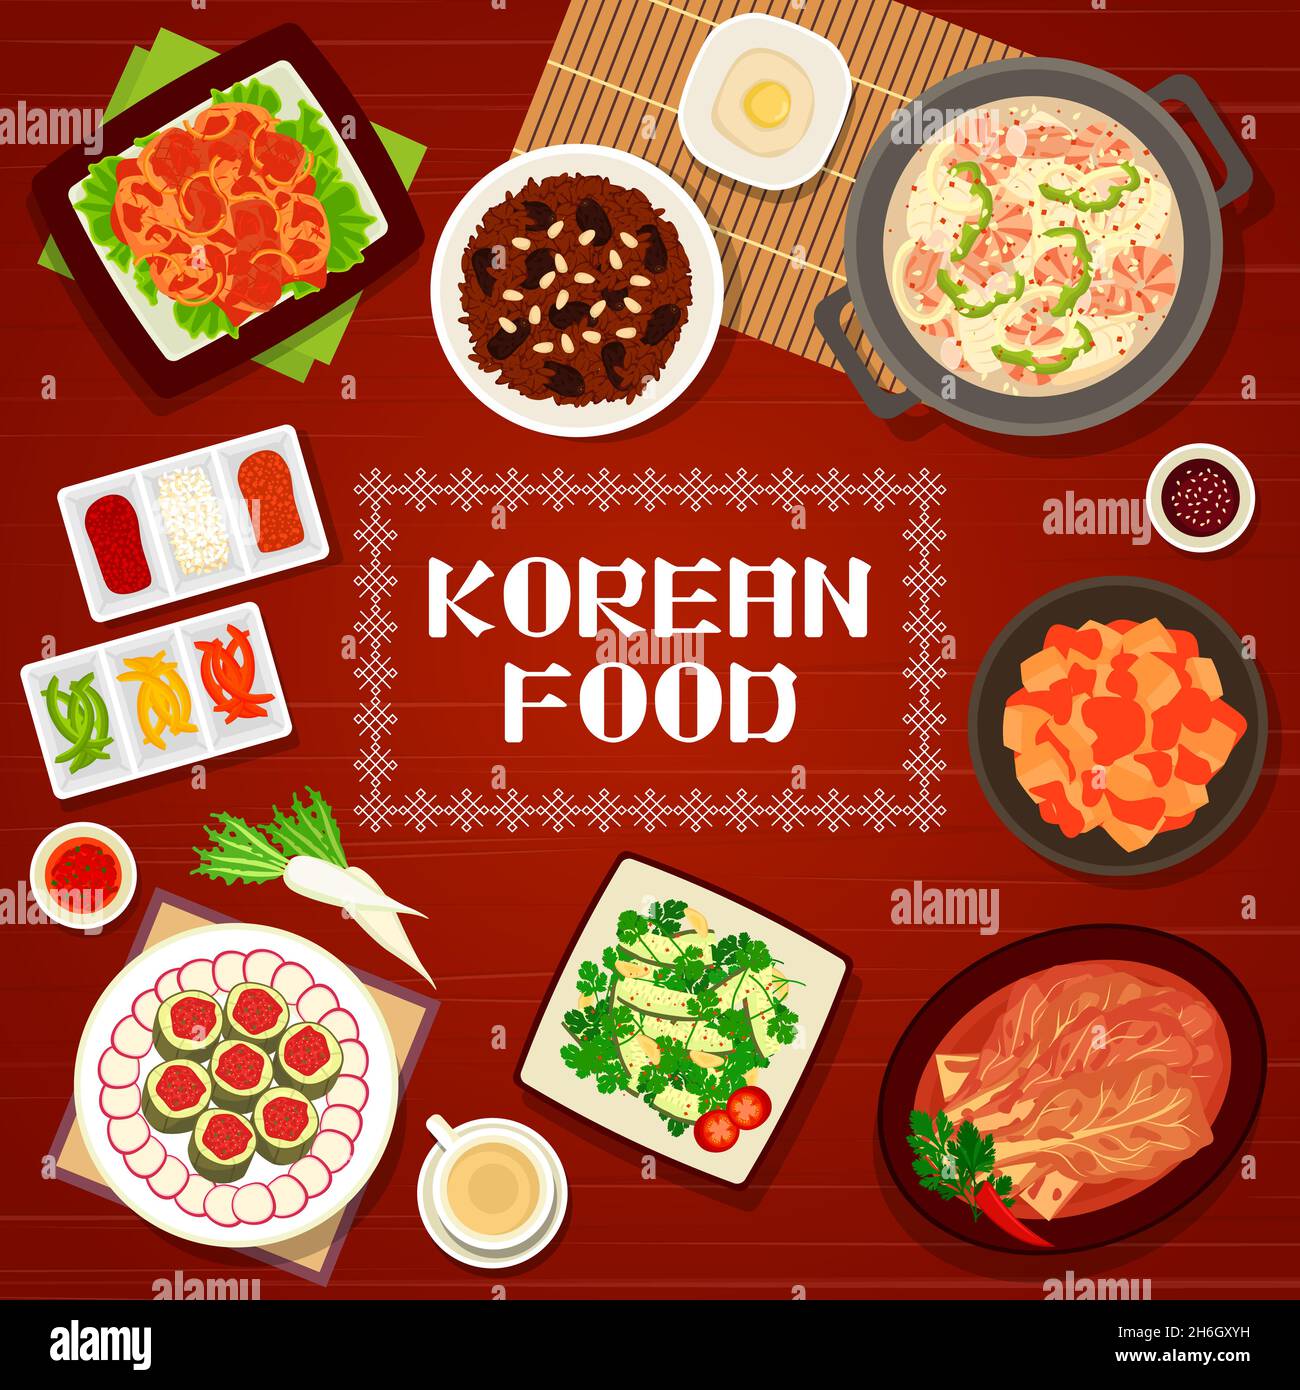 Ăn uống là một phần không thể thiếu đối với cuộc sống của con người. Nếu bạn là một người yêu thích ẩm thực và muốn tìm hiểu thêm về ẩm thực Hàn Quốc, hãy đến và khám phá các hình ảnh đẹp về ẩm thực Hàn Quốc. Bạn sẽ có cơ hội hiểu thêm về cách chế biến và các nguyên liệu đặc trưng của Hàn Quốc, và trở thành một chuyên gia ẩm thực thực thụ. 